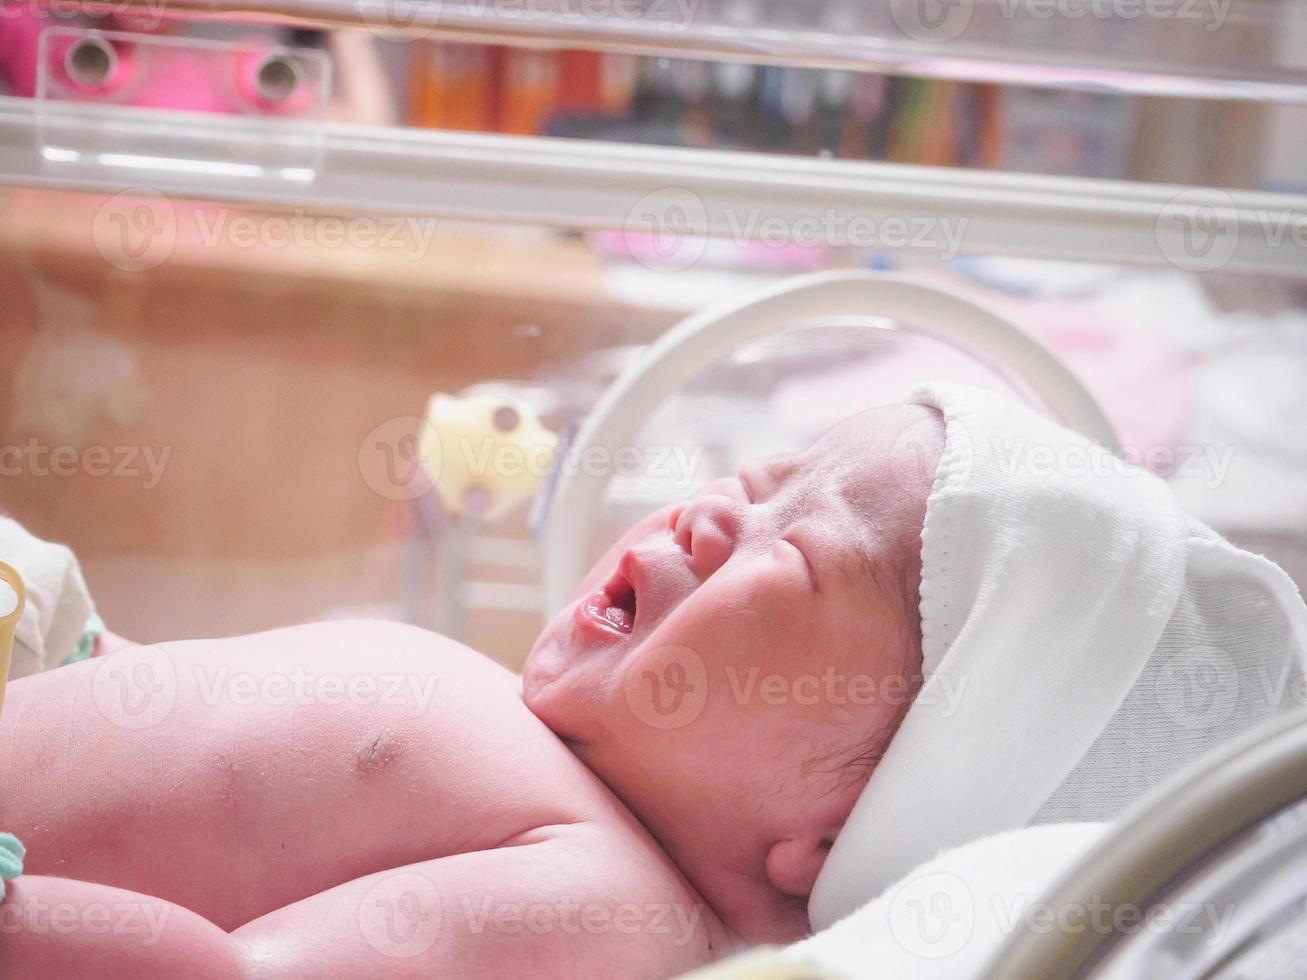 bébé nouveau-né à l'intérieur de l'incubateur dans la salle d'accouchement post-hôpital photo